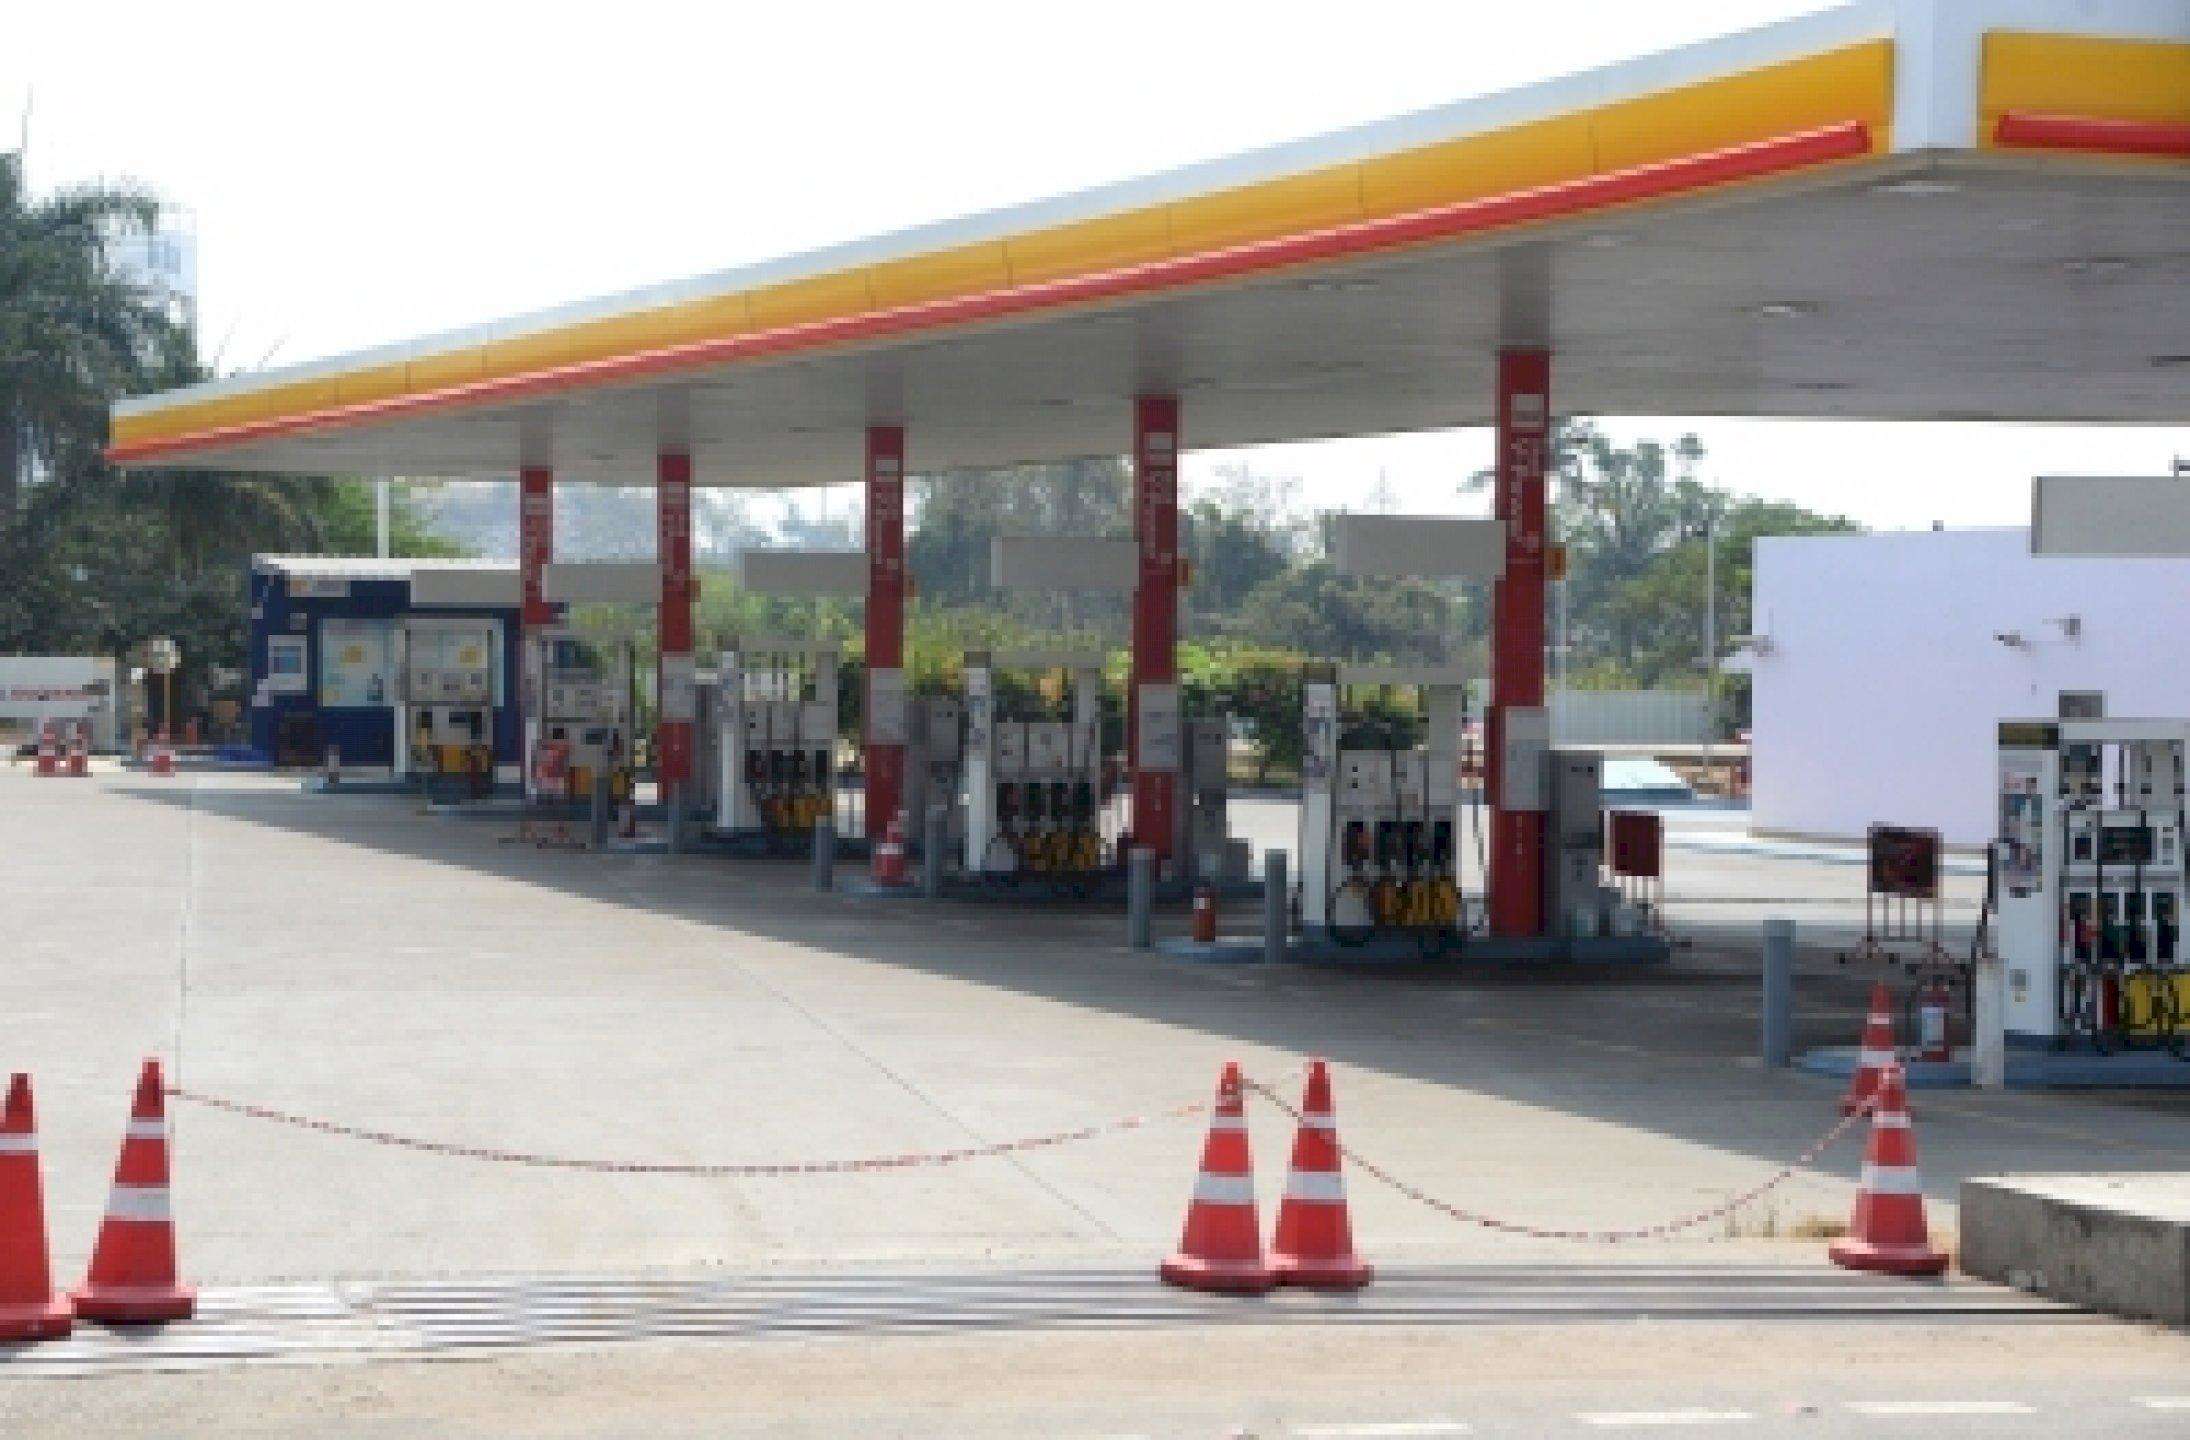 petrol pumps बंद करने की झूठी खबर फैलाने वालों पर कार्रवाई करेगी पंजाब पुलिस